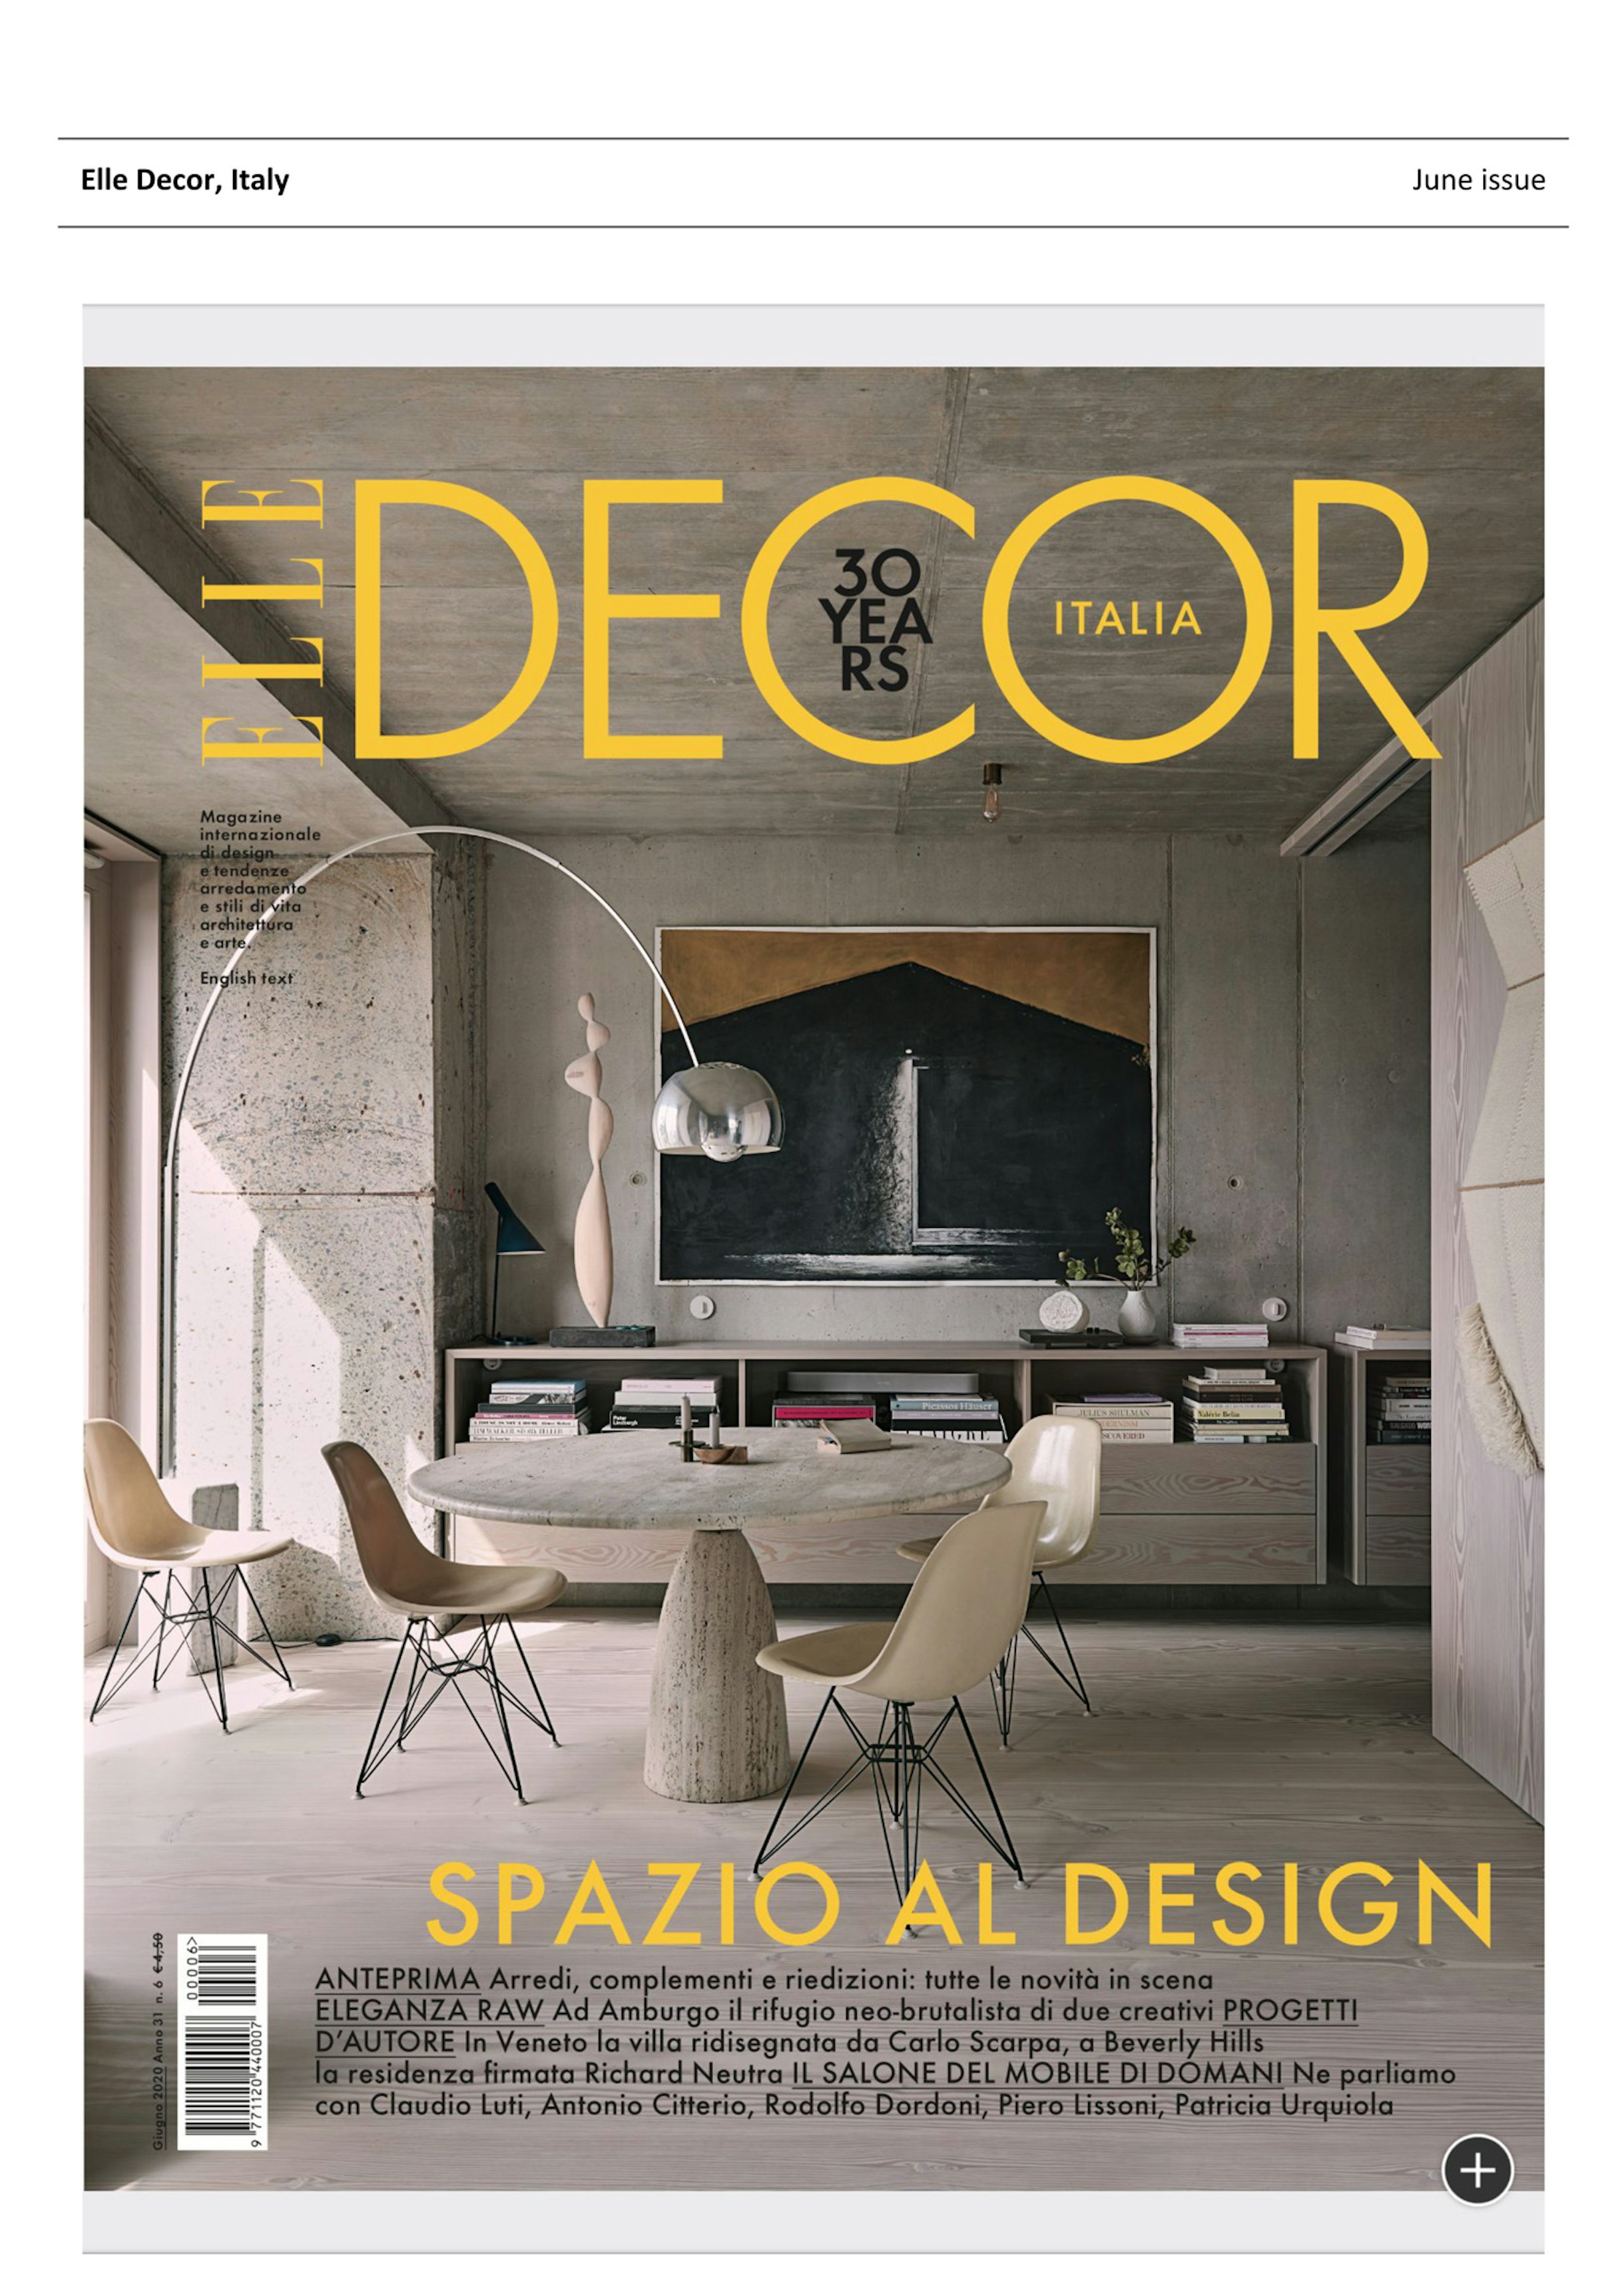 Elle Decor - Spazio al Design - image